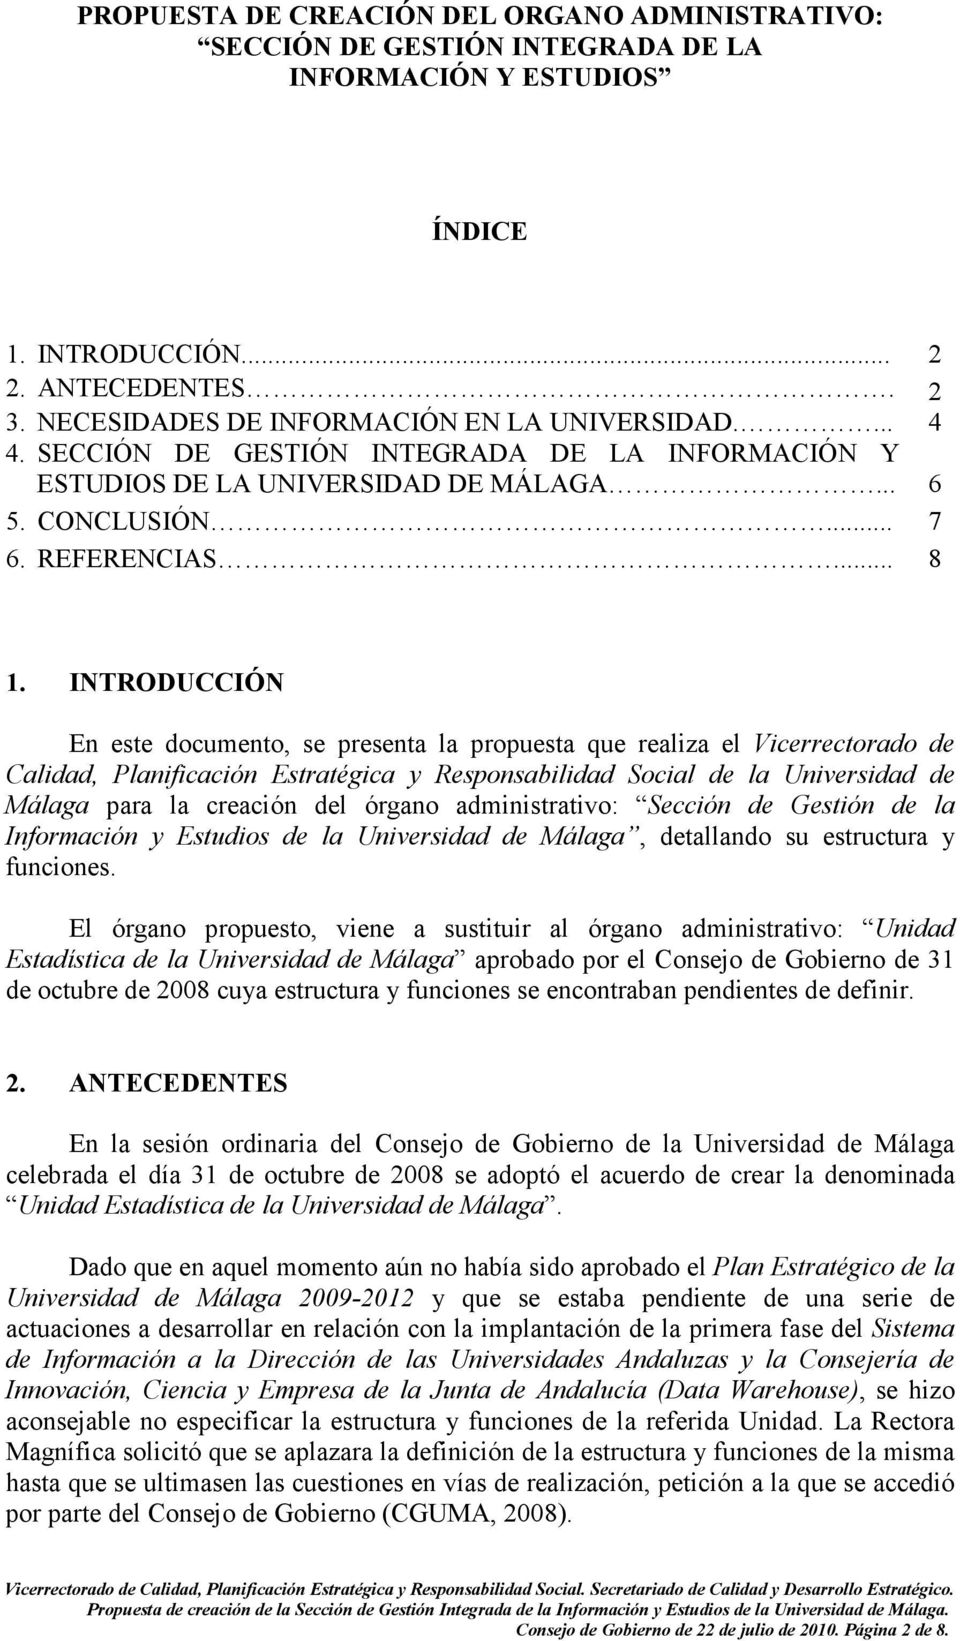 INTRODUCCIÓN En este documento, se presenta la propuesta que realiza el Vicerrectorado de Calidad, Planificación Estratégica y Responsabilidad Social de la Universidad de Málaga para la creación del